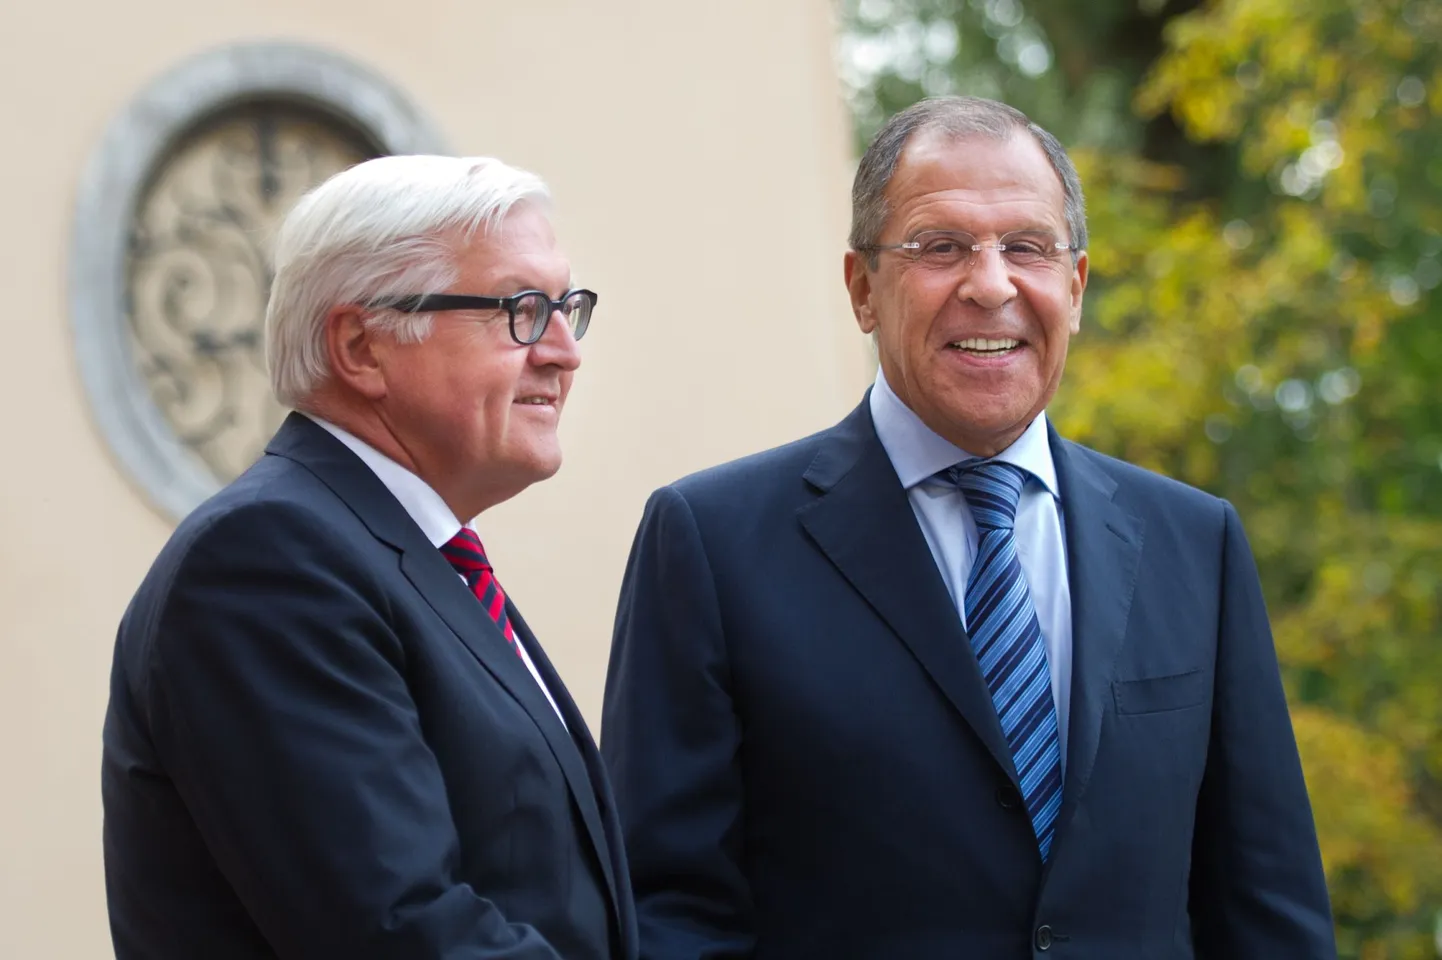 Saksa välisminister Frank-Walter Steinmeier (vasakul) koos Vene esidiplomaadi Sergei Lavroviga Berliinis selle aasta augustis.